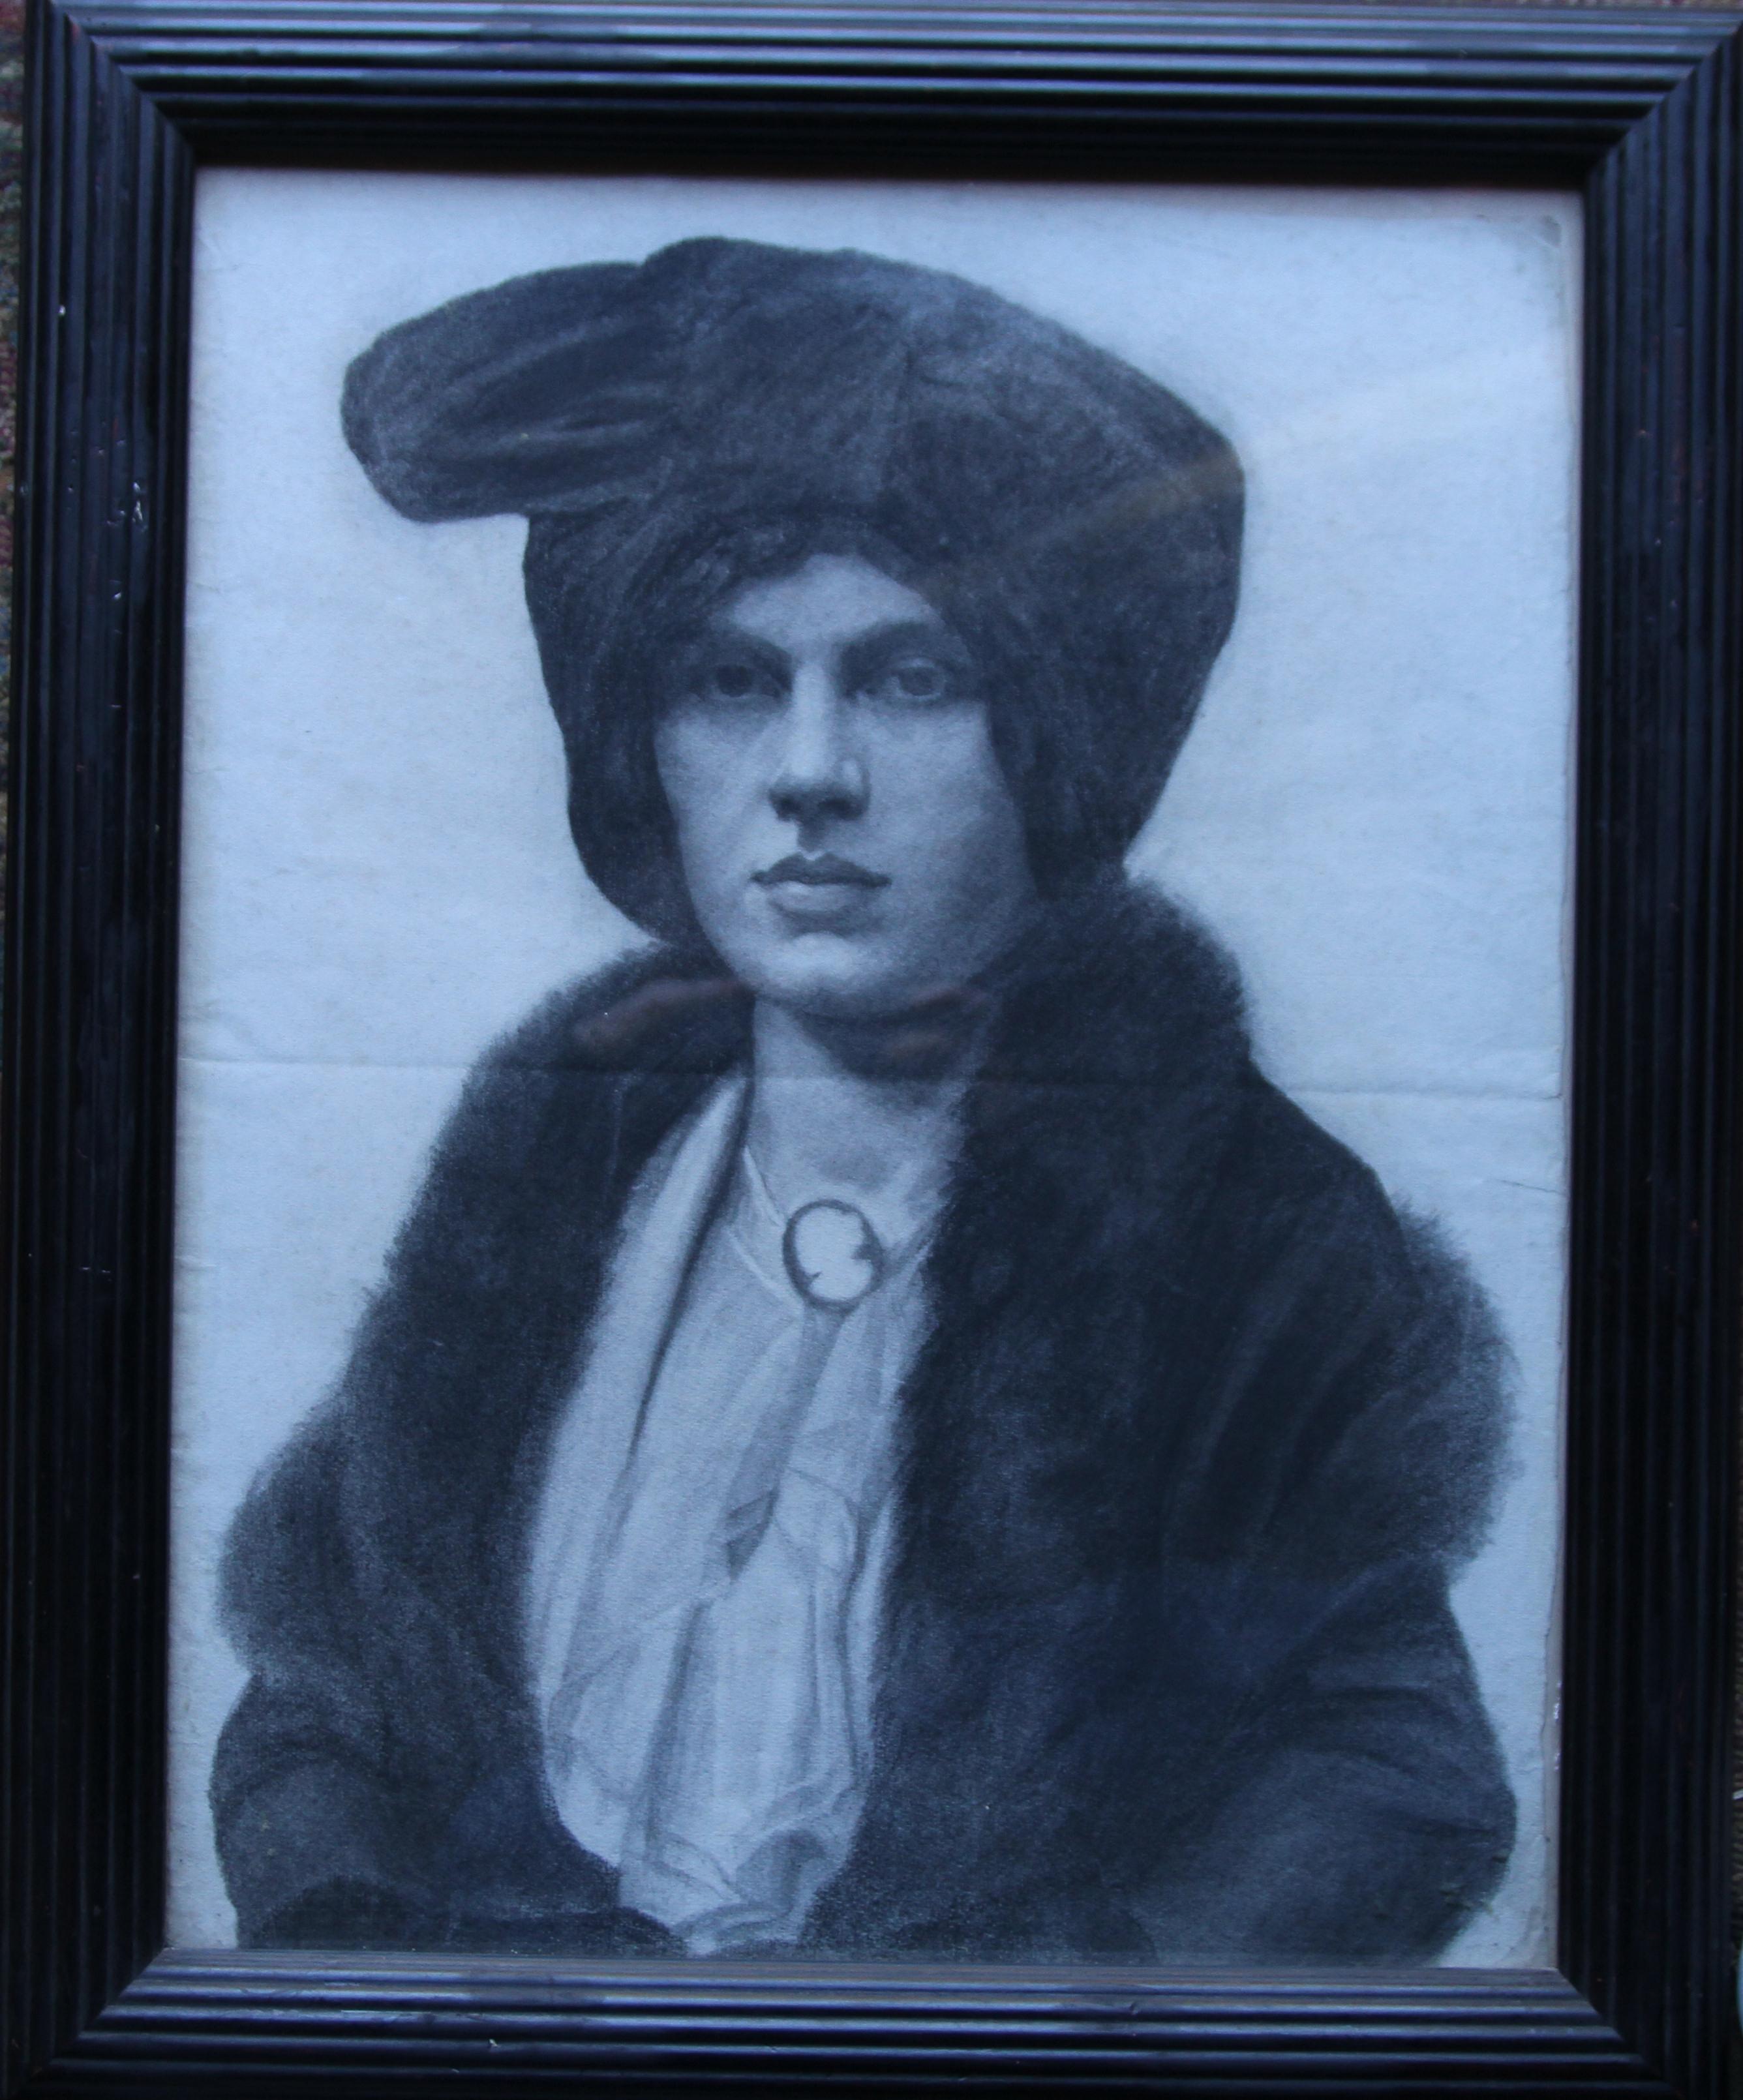 Il s'agit d'un beau dessin au crayon vers 1910 représentant une dame de la haute société écossaise.  Exécuté par l'un des principaux artistes de l'époque dans le cercle de John Lavery, il s'agit d'un portrait très frappant et fascinant, en bon